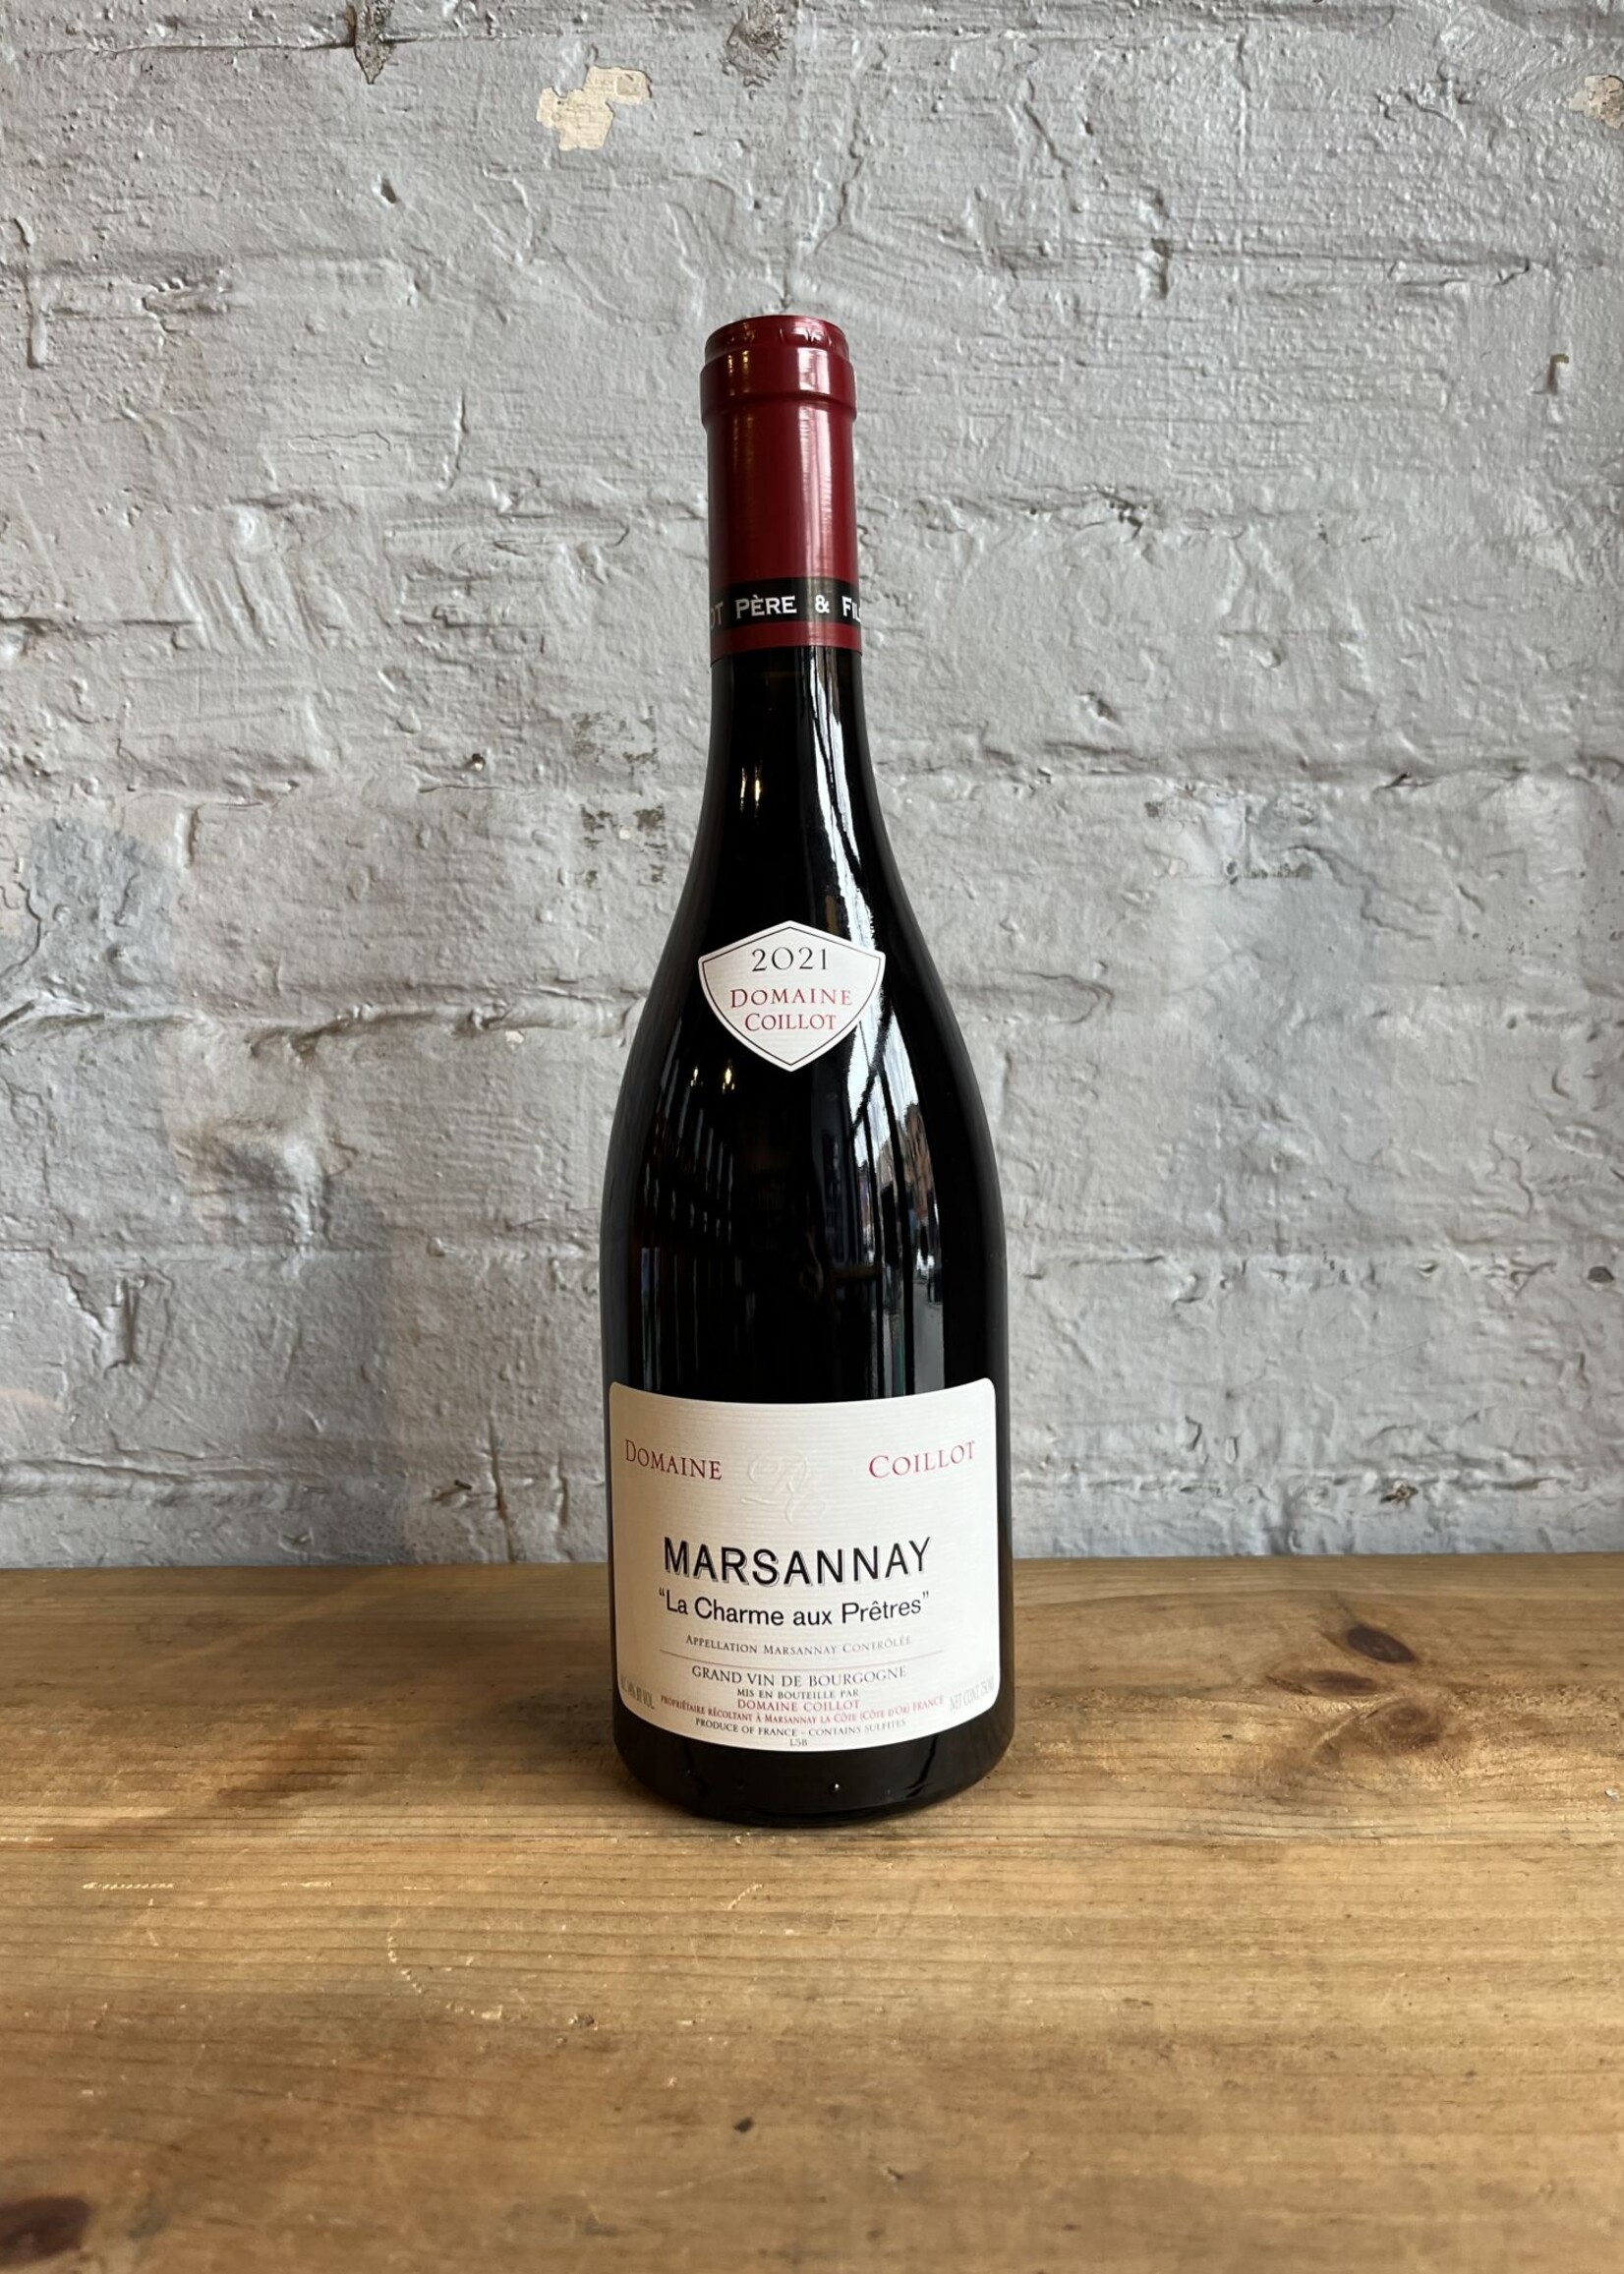 Wine 2021 Domaine Coillot Pere et Fils Marsannay La Charme aux Pretres - Burgundy, France (750ml)